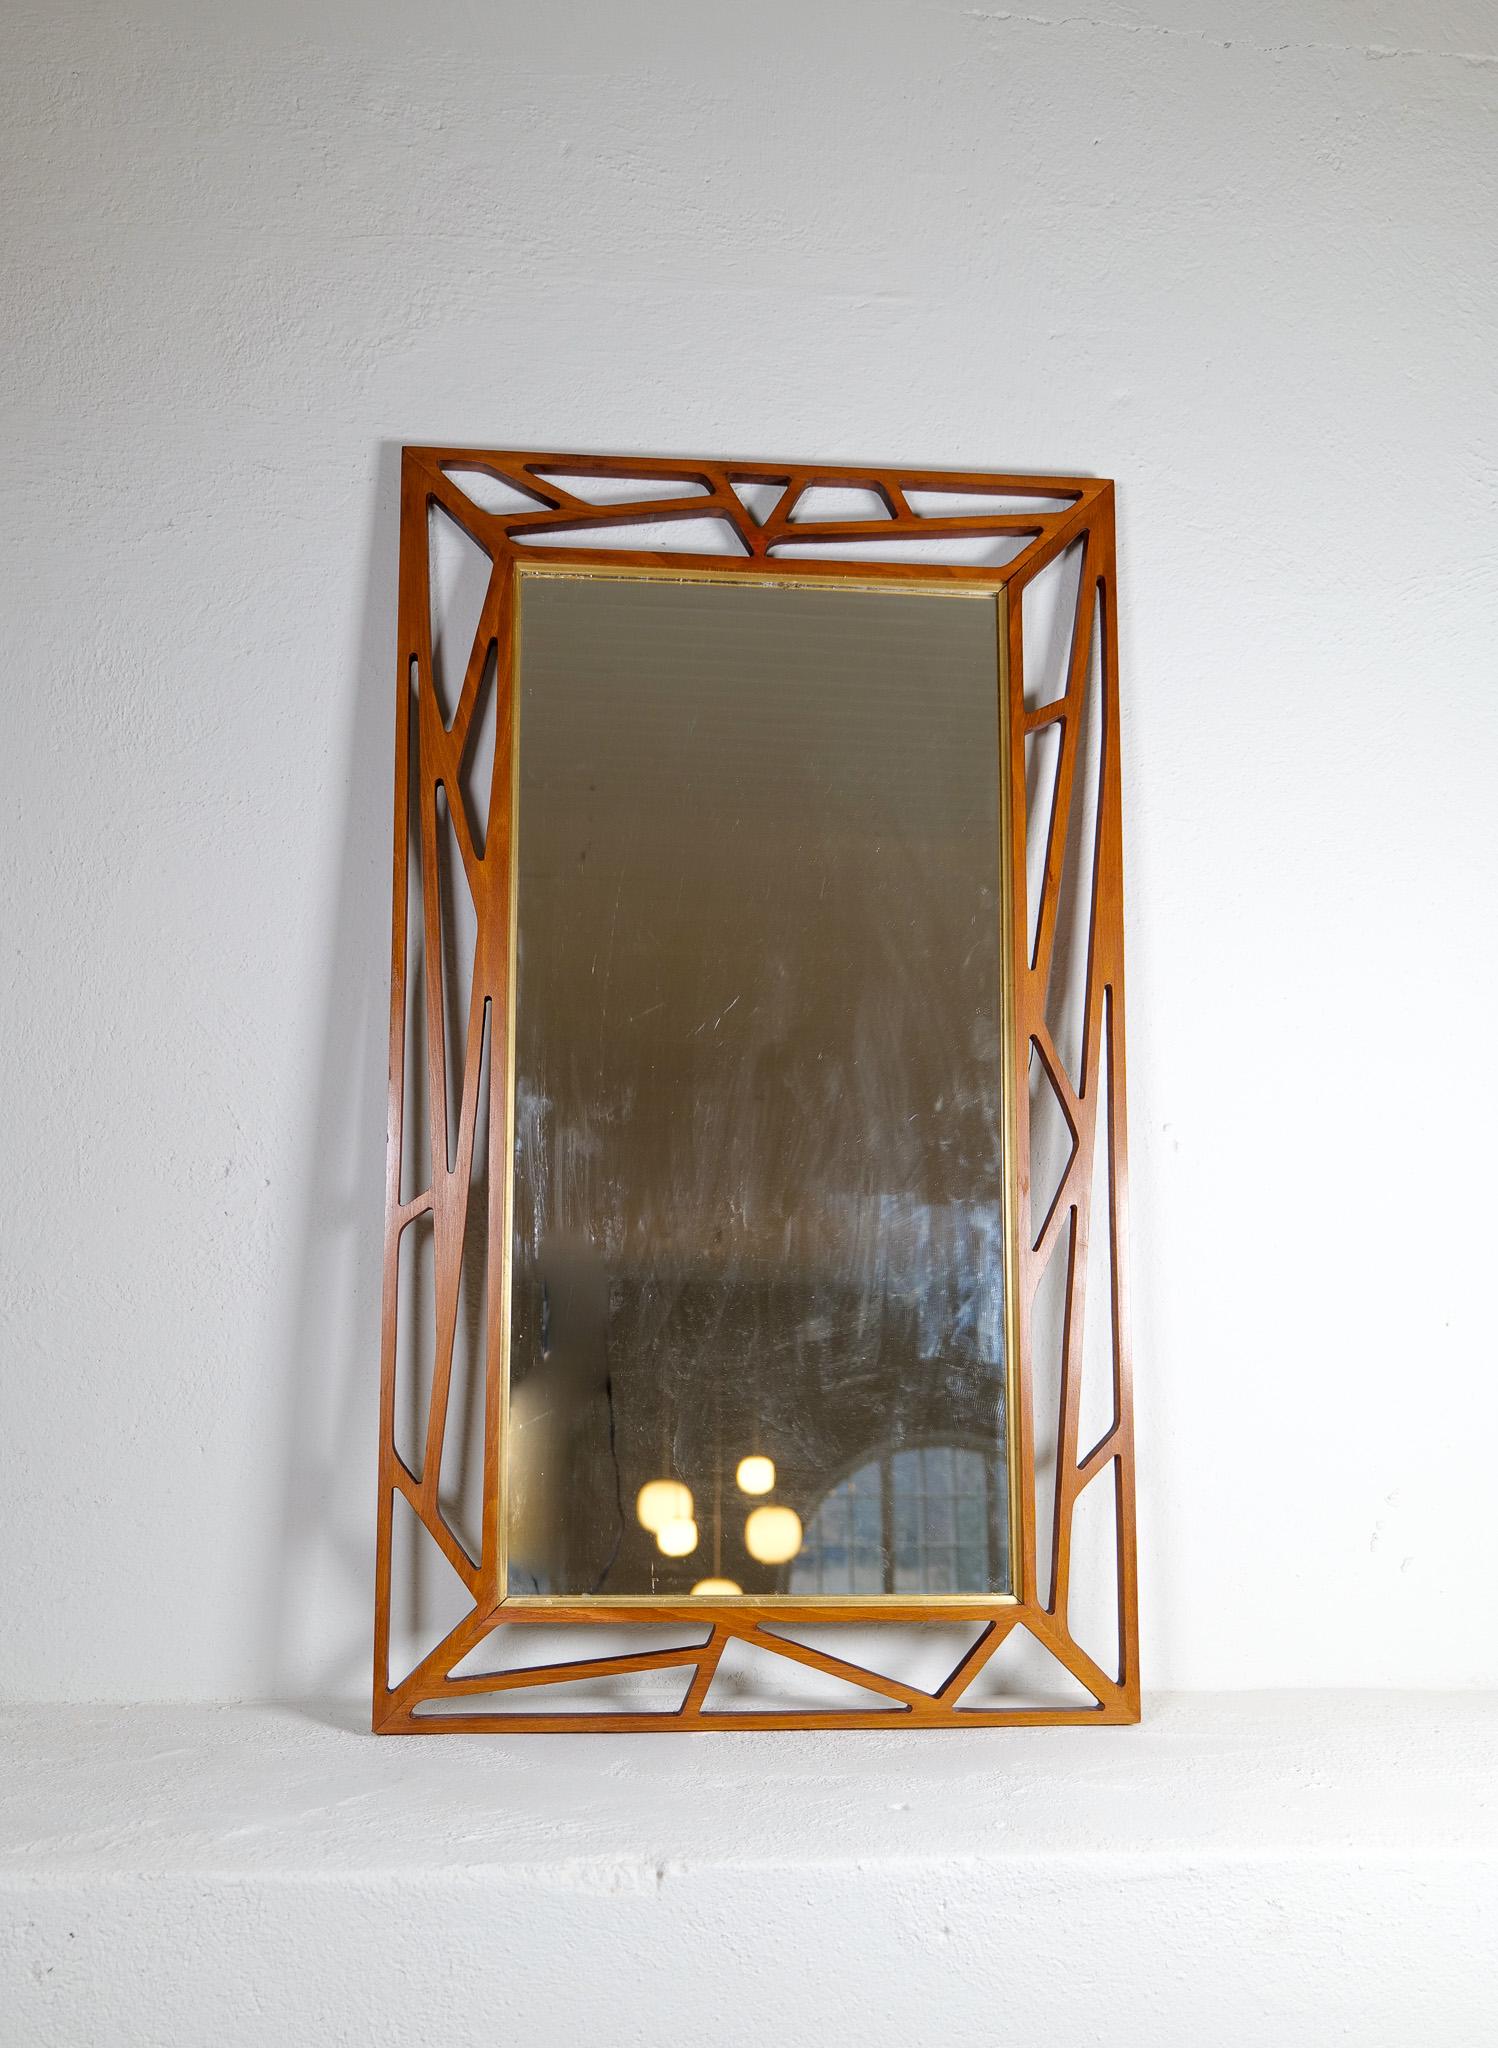 Dieser außergewöhnlich gut gestaltete Spiegel wurde von Yngve Ekström in den 1950er Jahren in Schweden entworfen. 